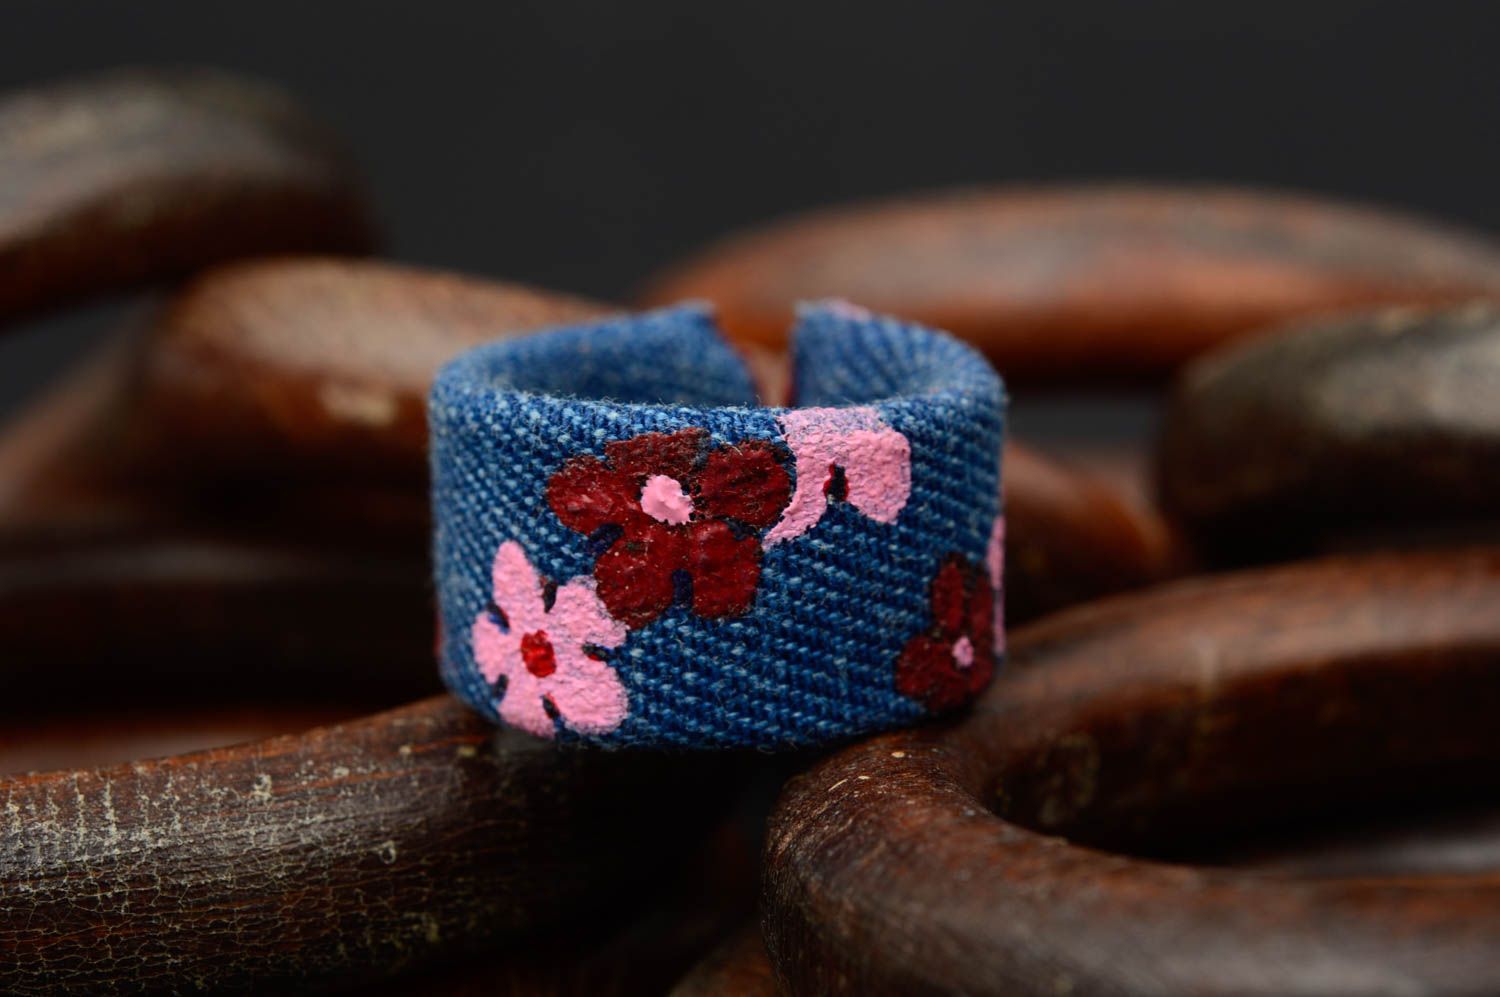 Unusual handmade fabric ring artisan jewelry designs denim ring for girls photo 1